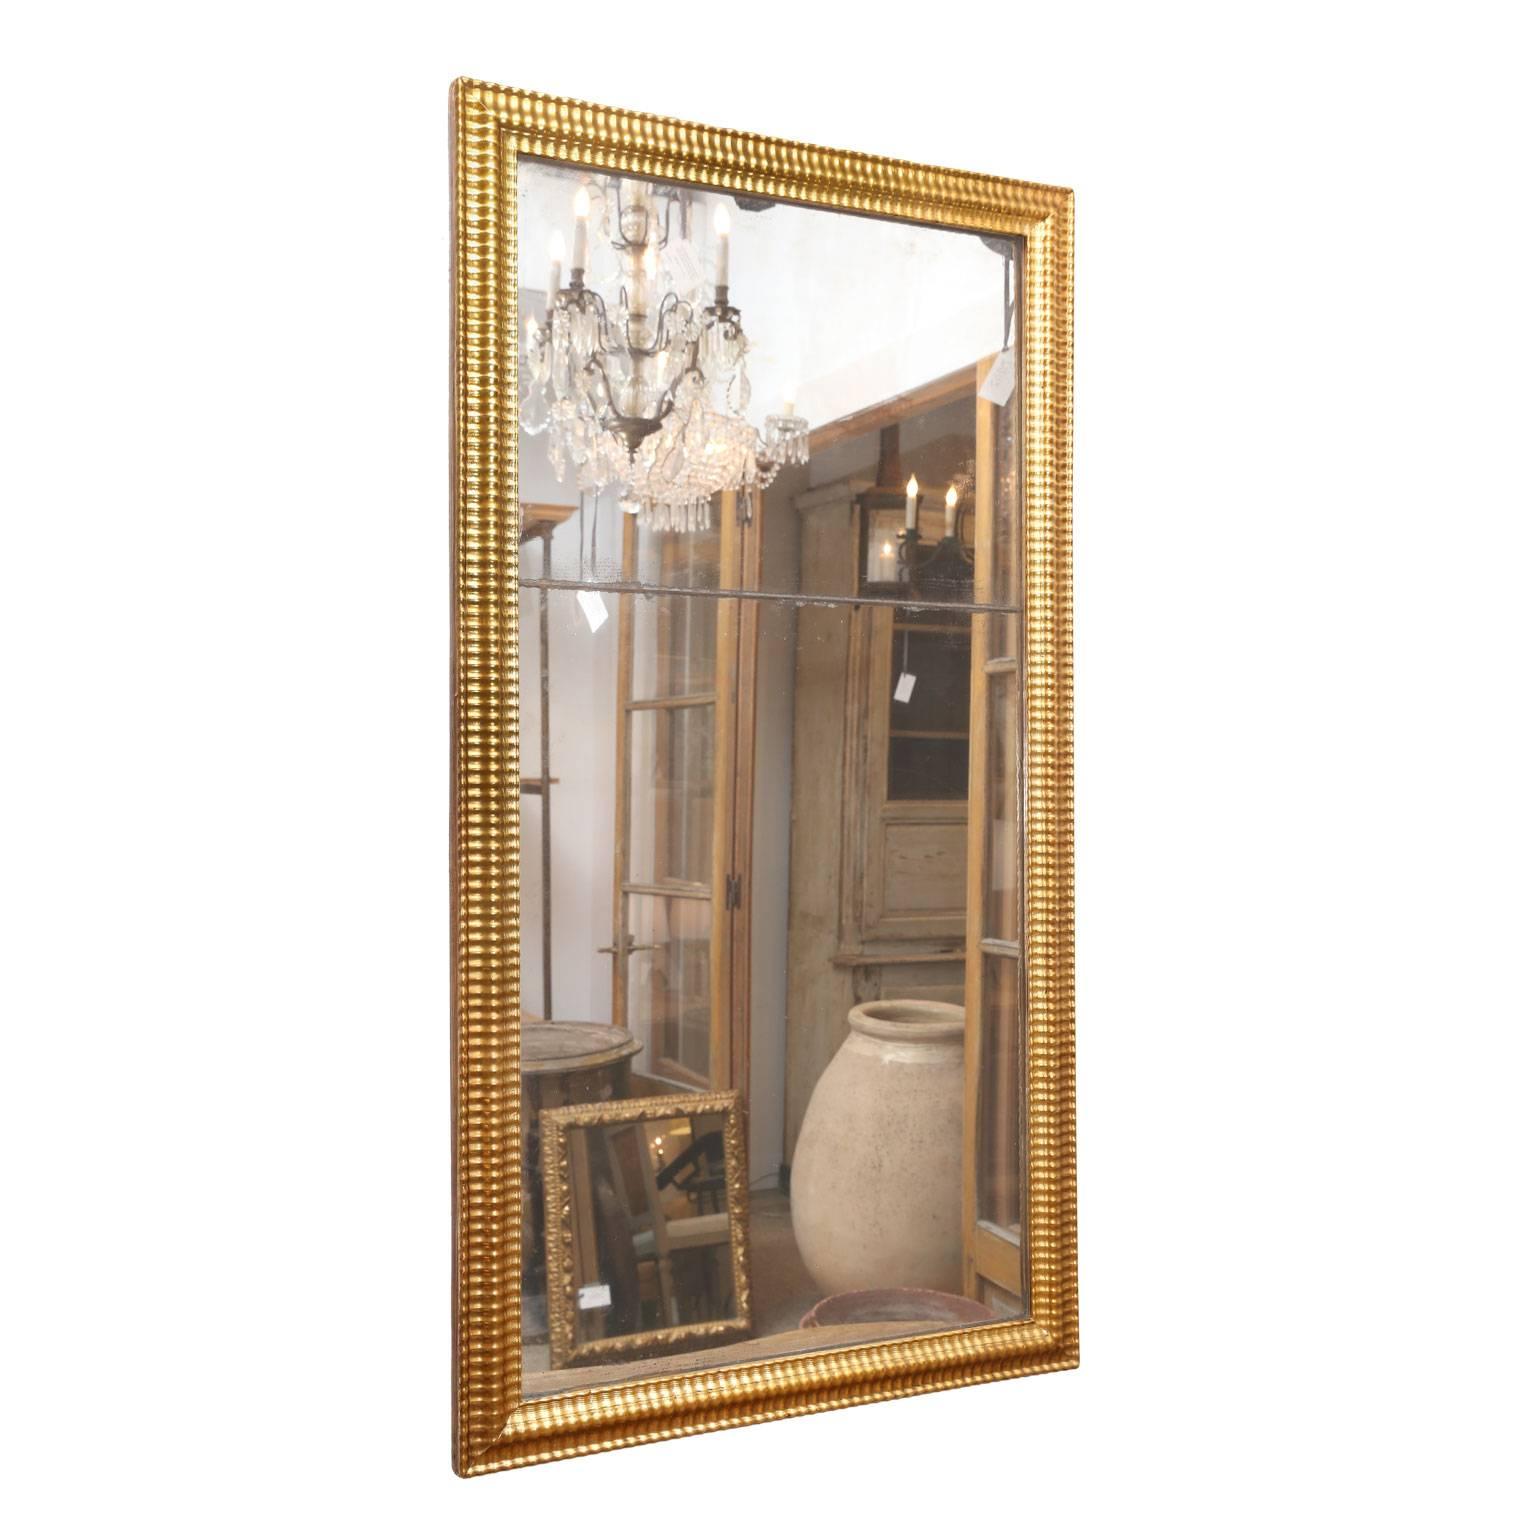 Miroir Louis XVI en bois doré, deux tons de dorure ornent le cadre entourant une plaque de miroir bipartite. Le reflet du miroir est presque parfait et ne présente que quelques taches de vieillesse. De subtiles quantités de poussière de diamant